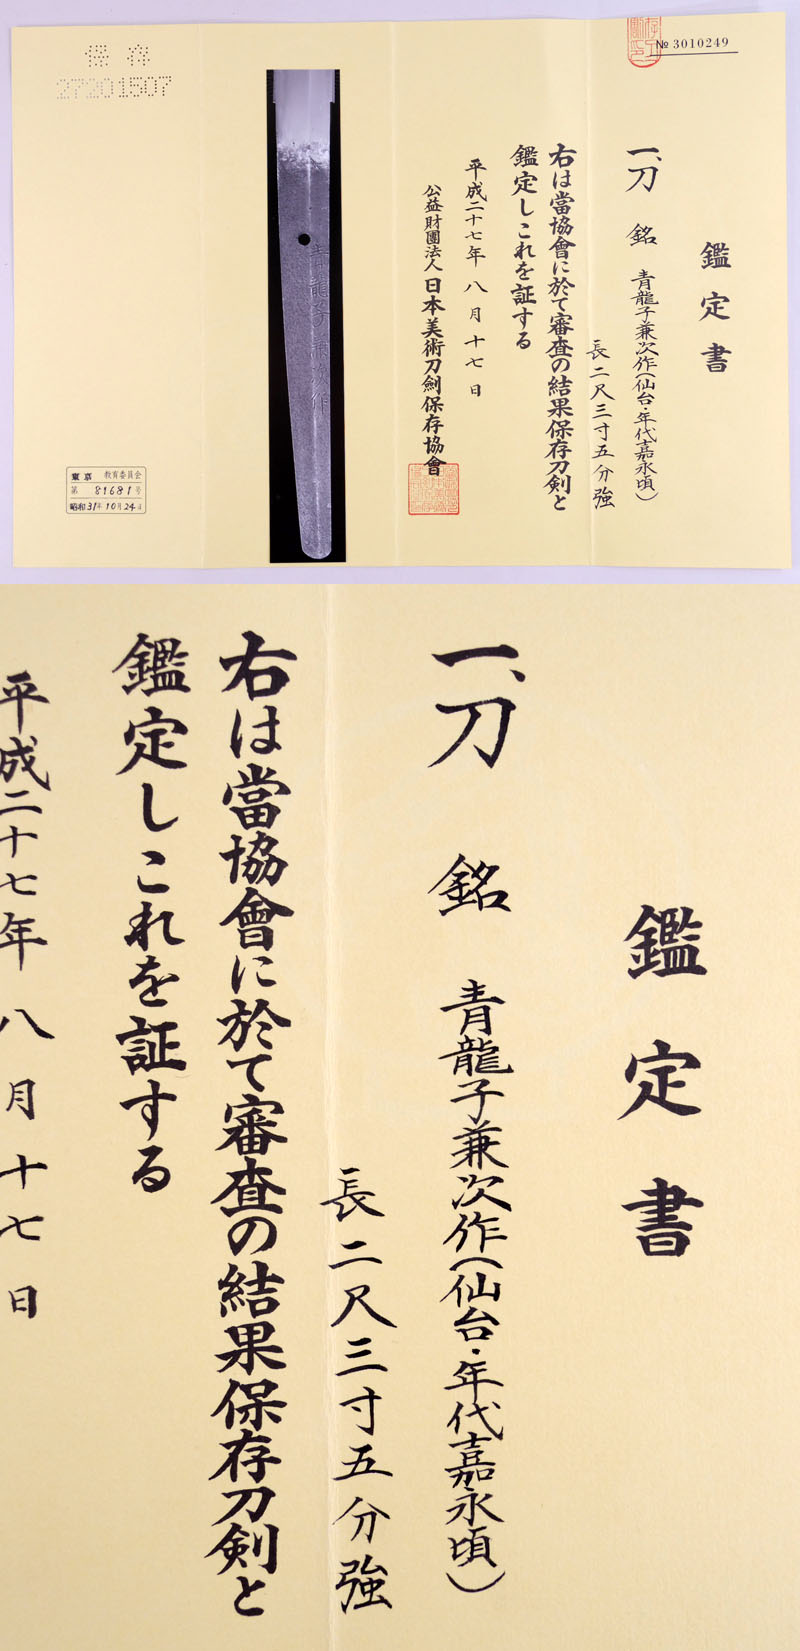 青龍子兼次作(熊谷兼次) Picture of Certificate